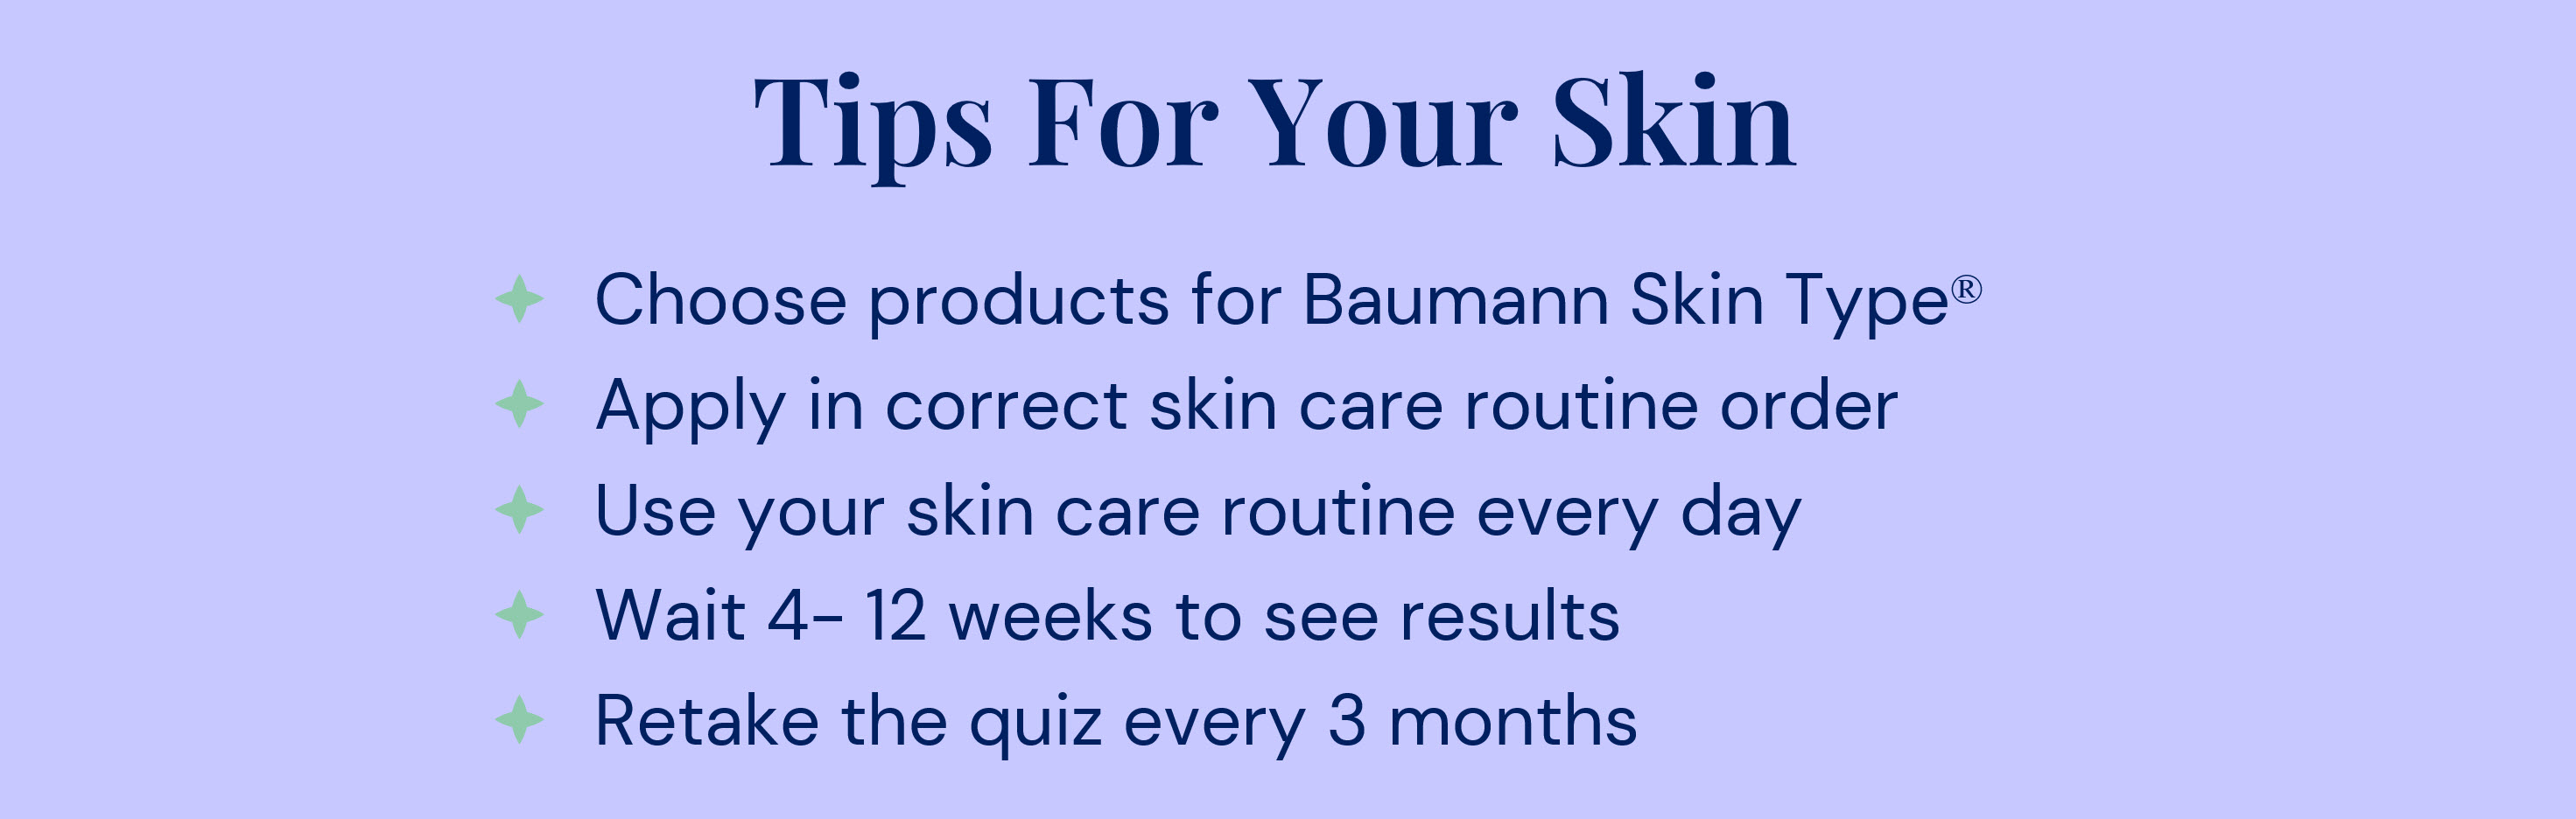 Tips For your Skin.jpg